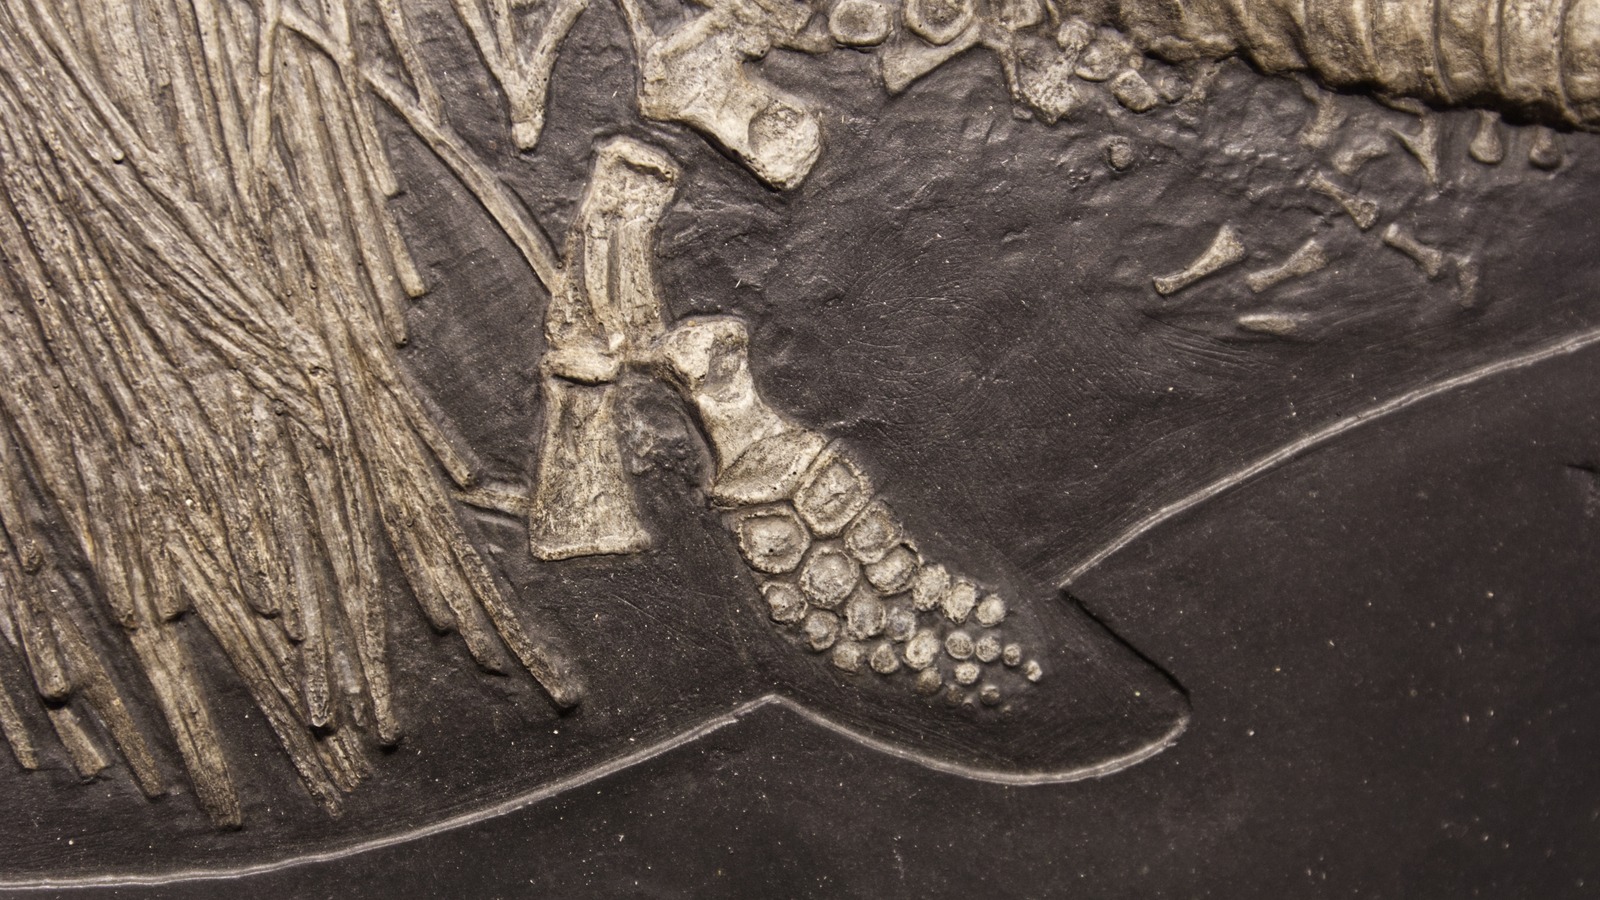 Des chercheurs viennent peut-être d'identifier le plus grand reptile marin ancien